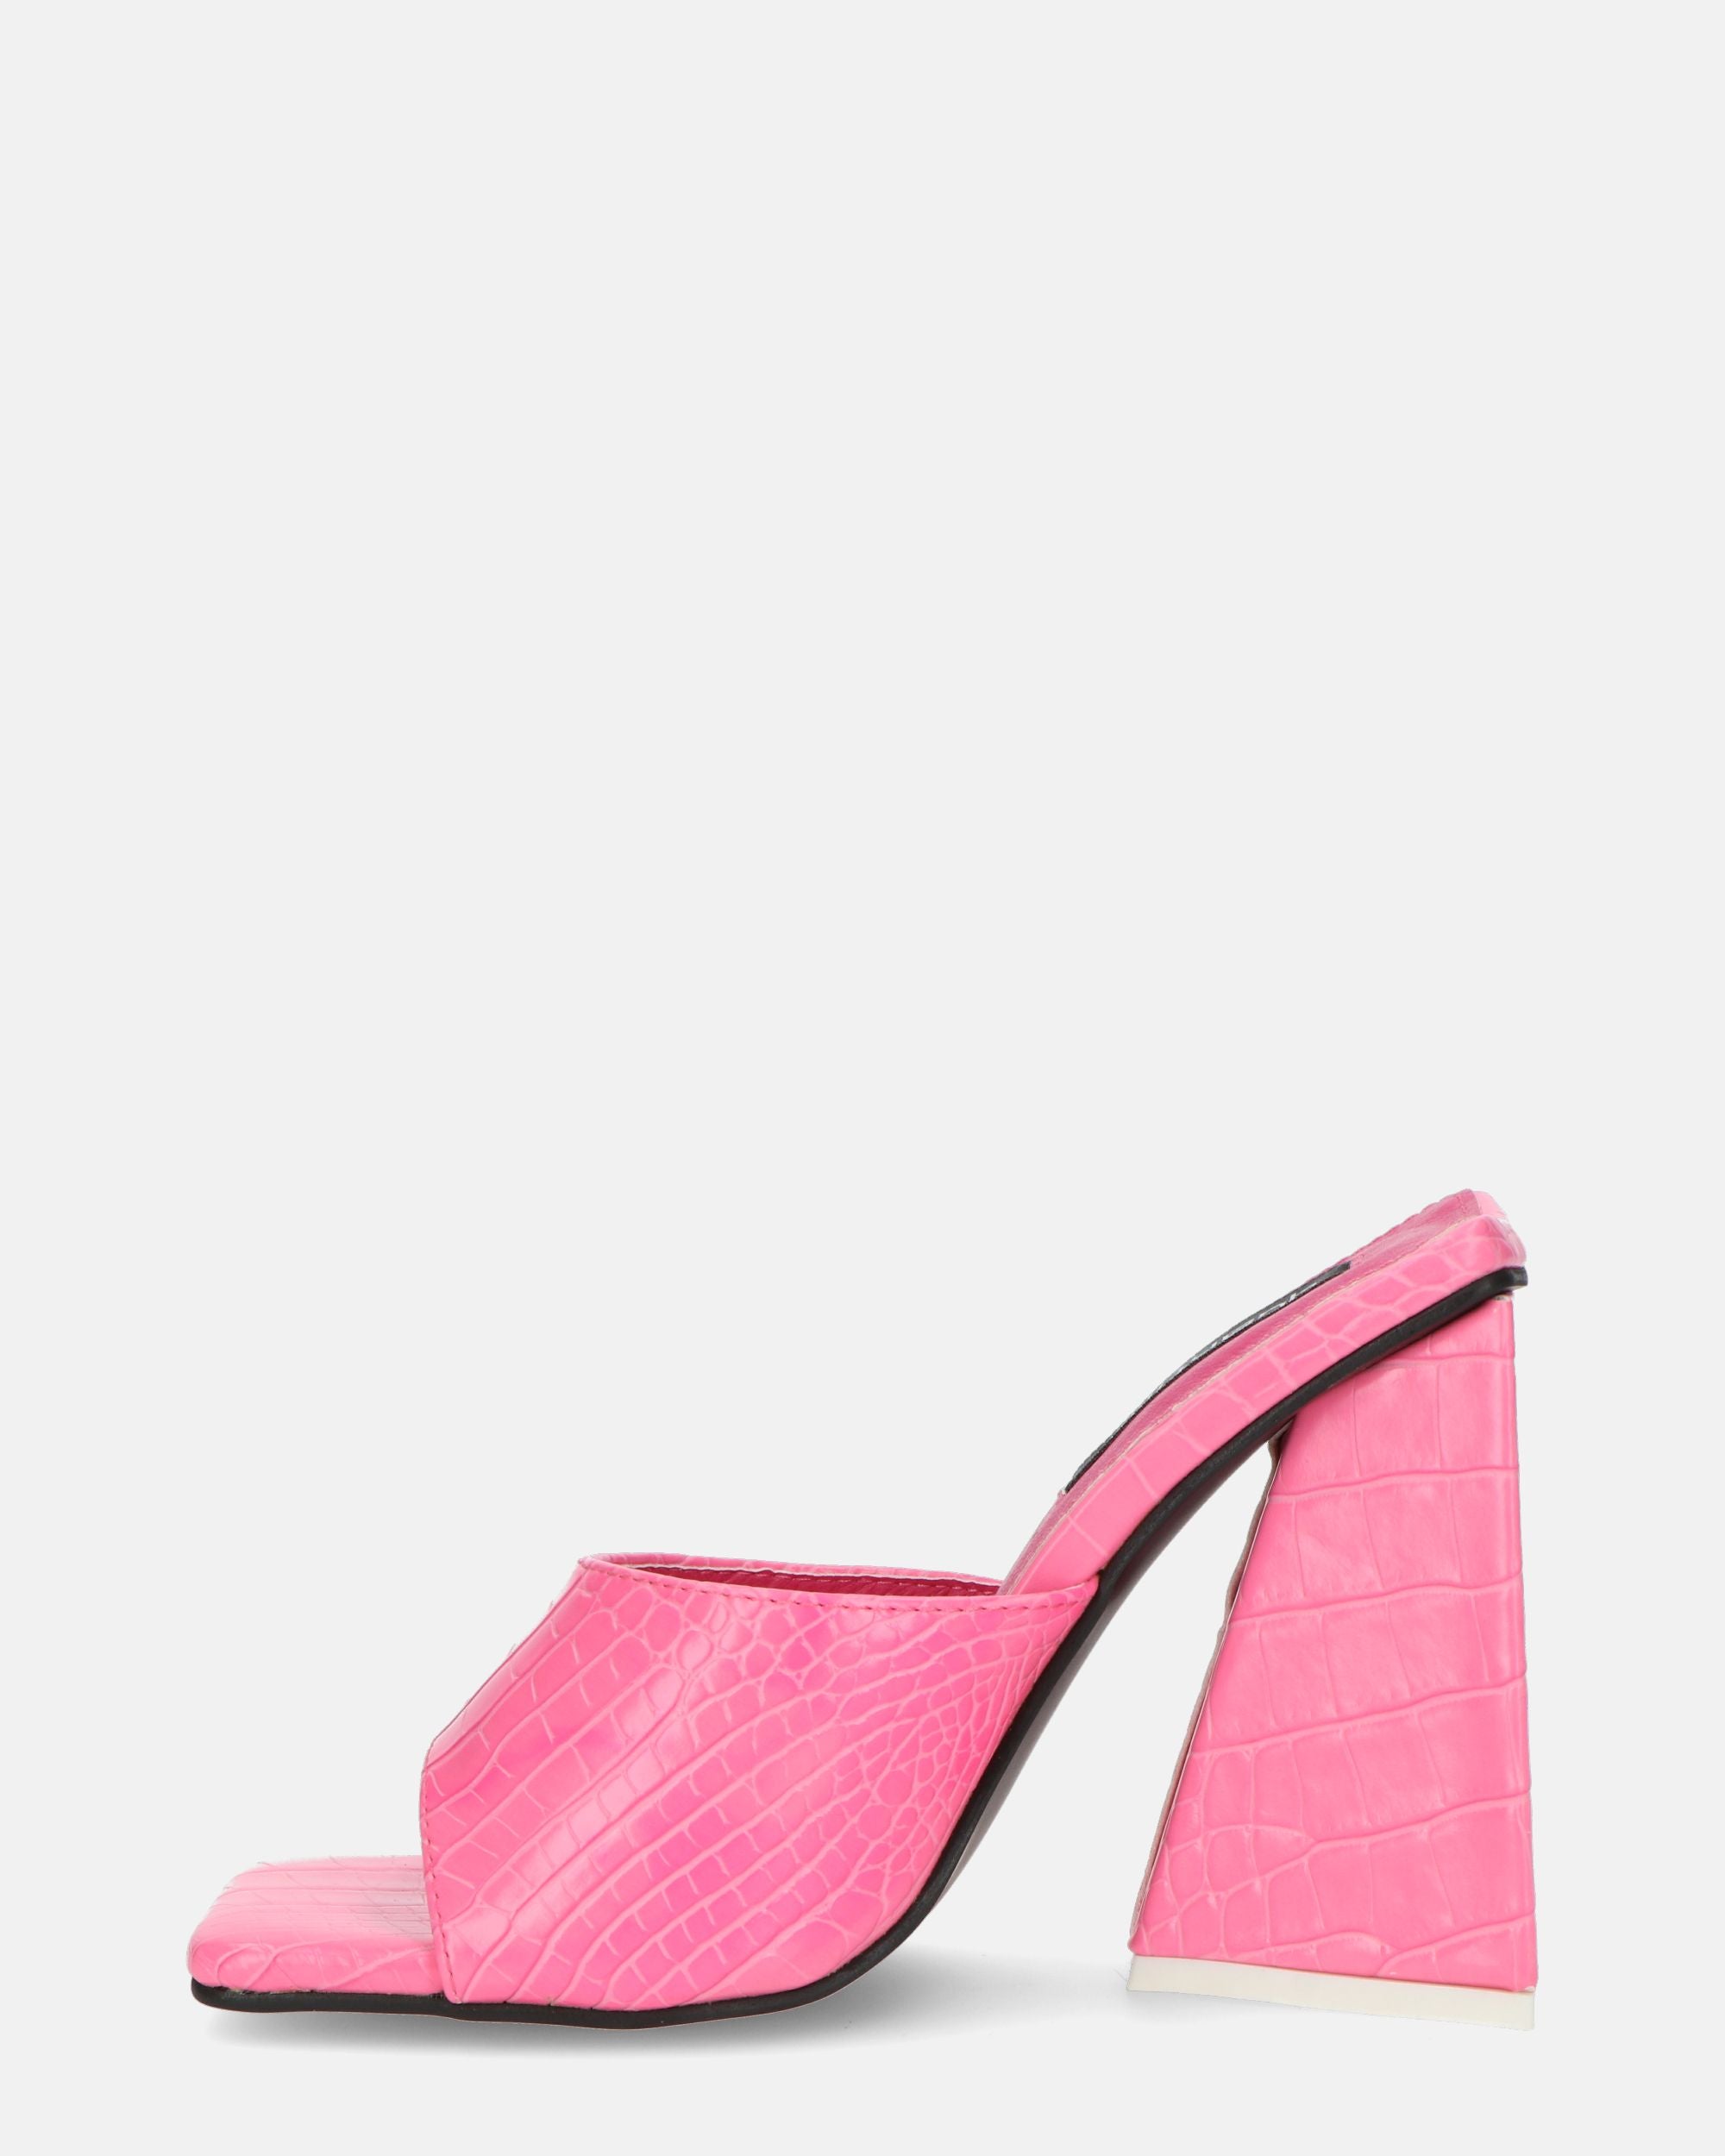 BUKET - sandalias de tacón en color rosa cocodrilo